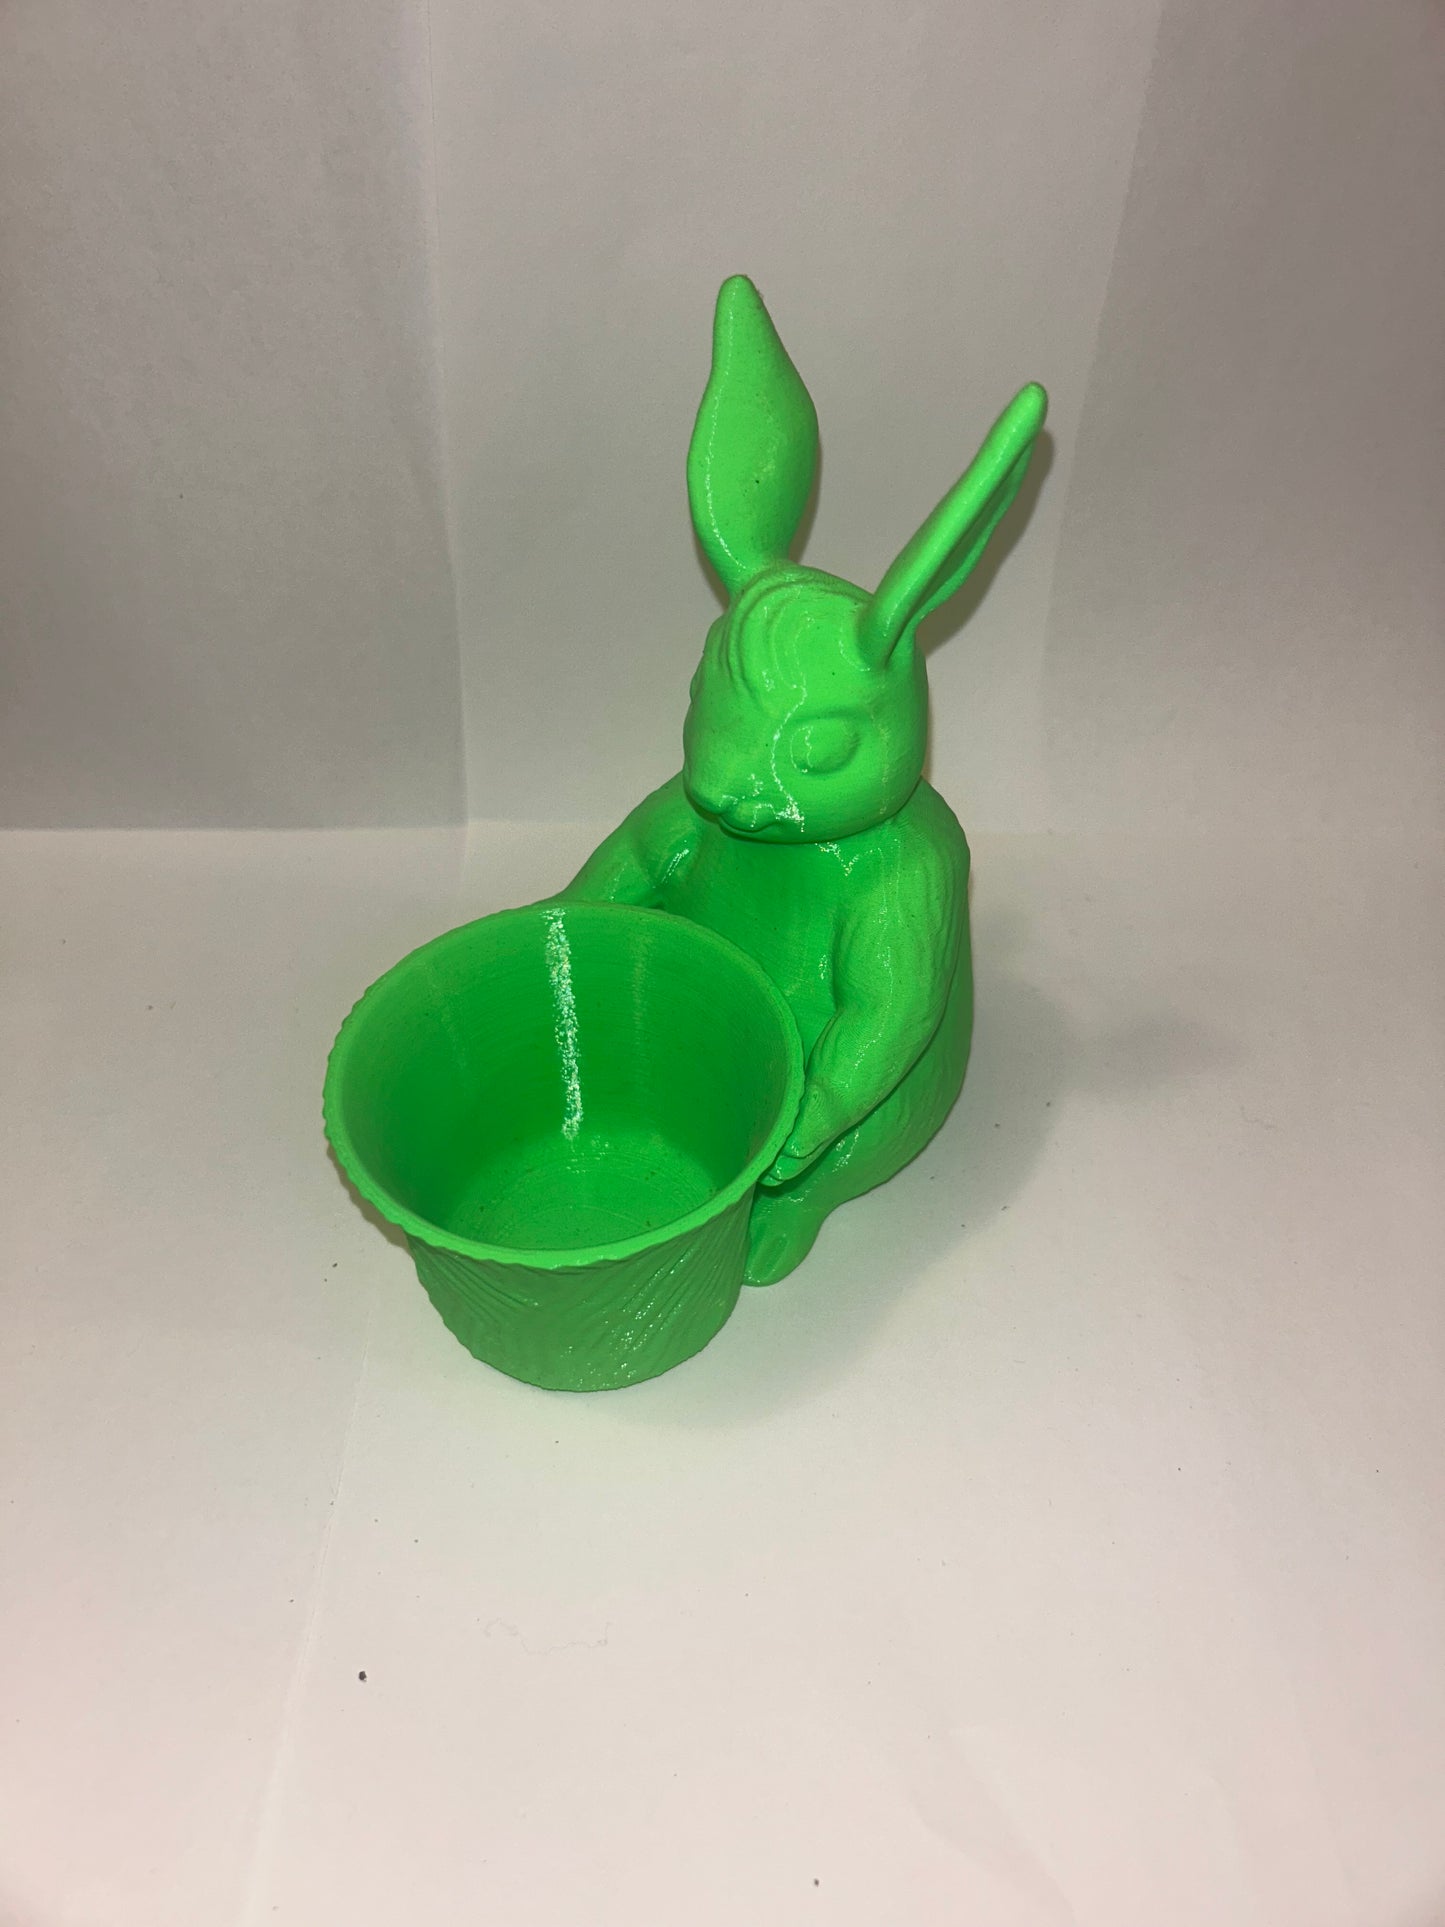 Bunny Rabbit Holding Bowl